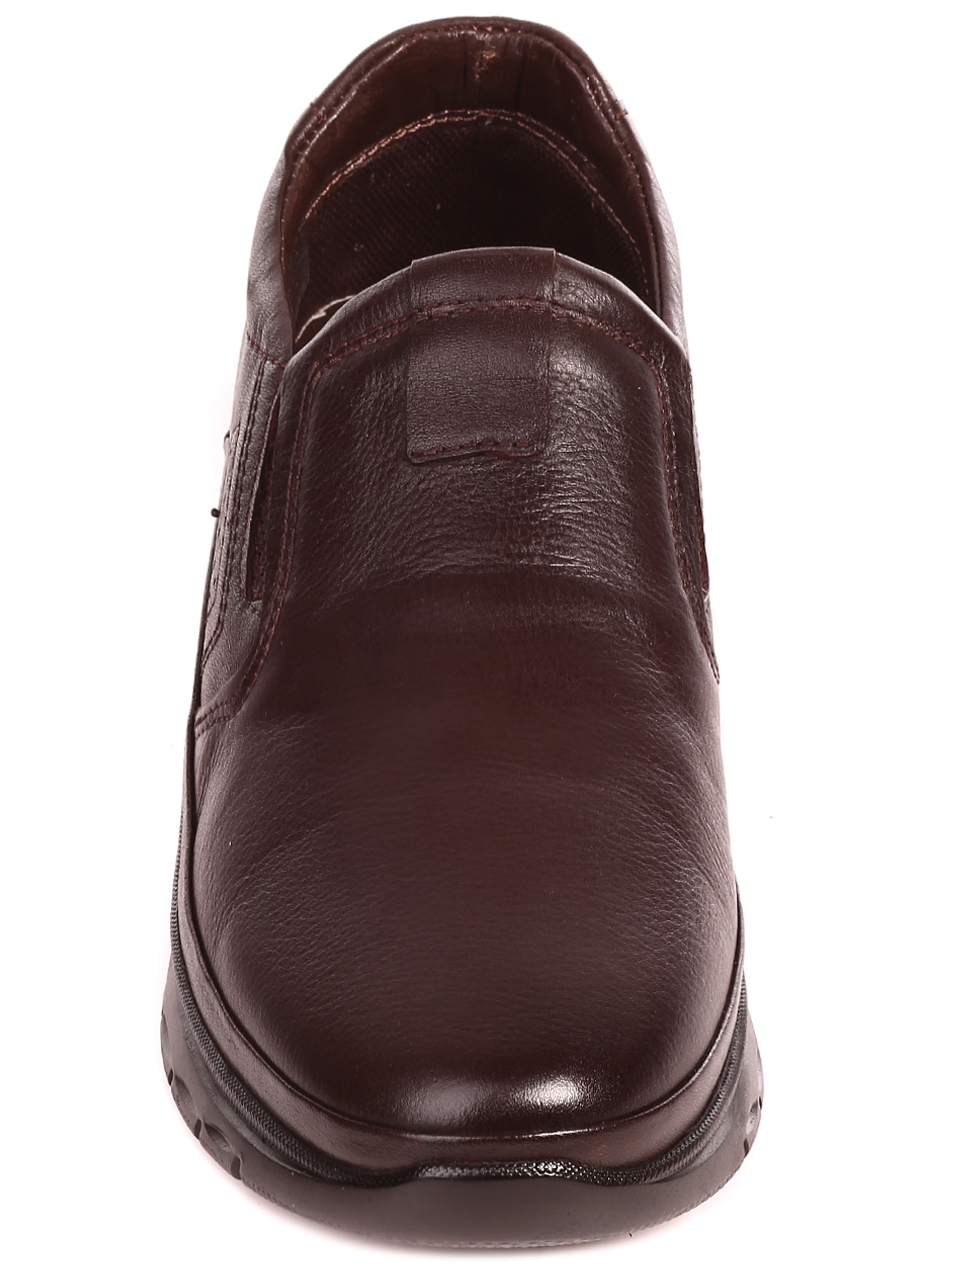 Елегантни мъжки обувки от естествена кожа 7AT-22699 coffee